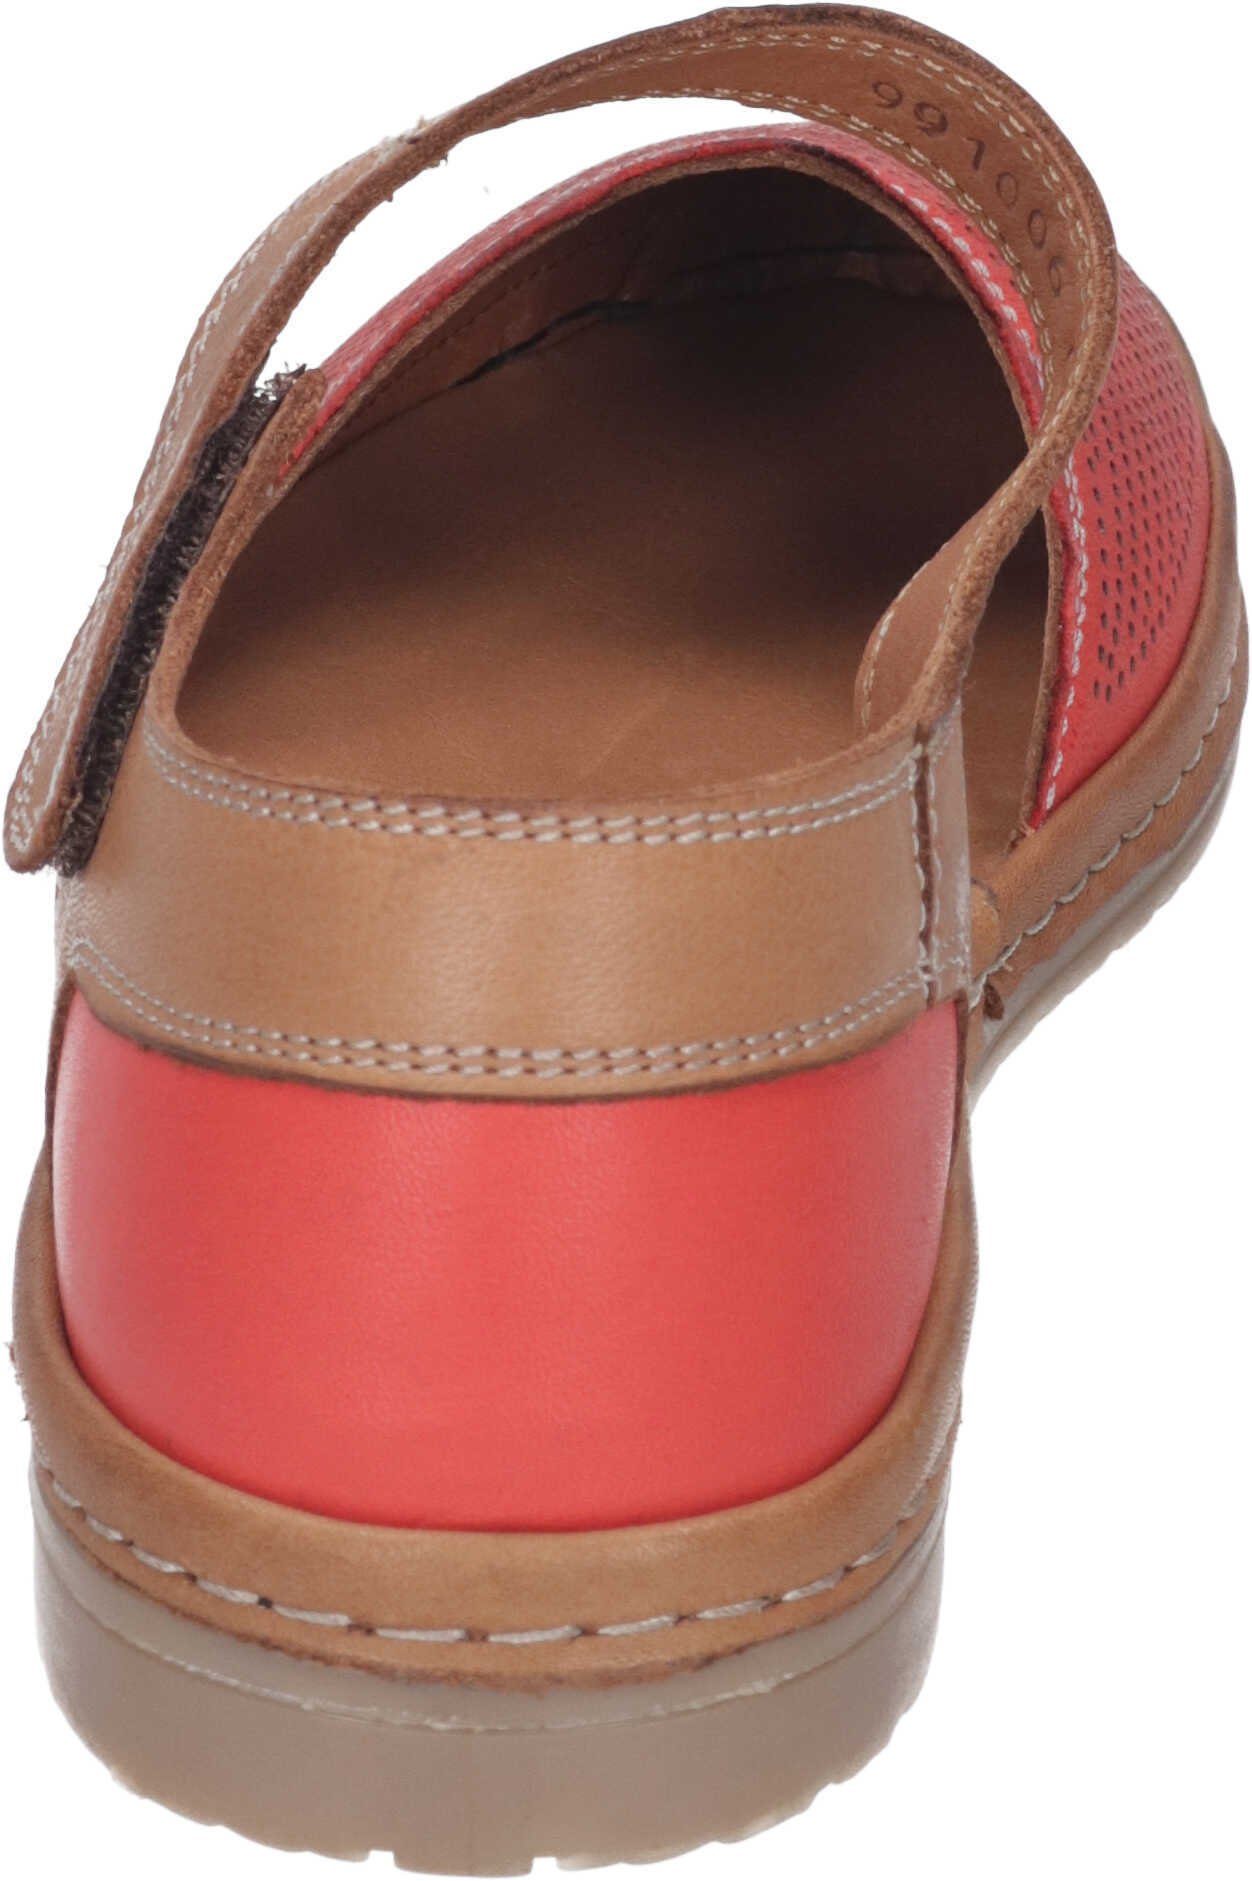 echtem Leder Sandalette rot Sandalen Manitu aus